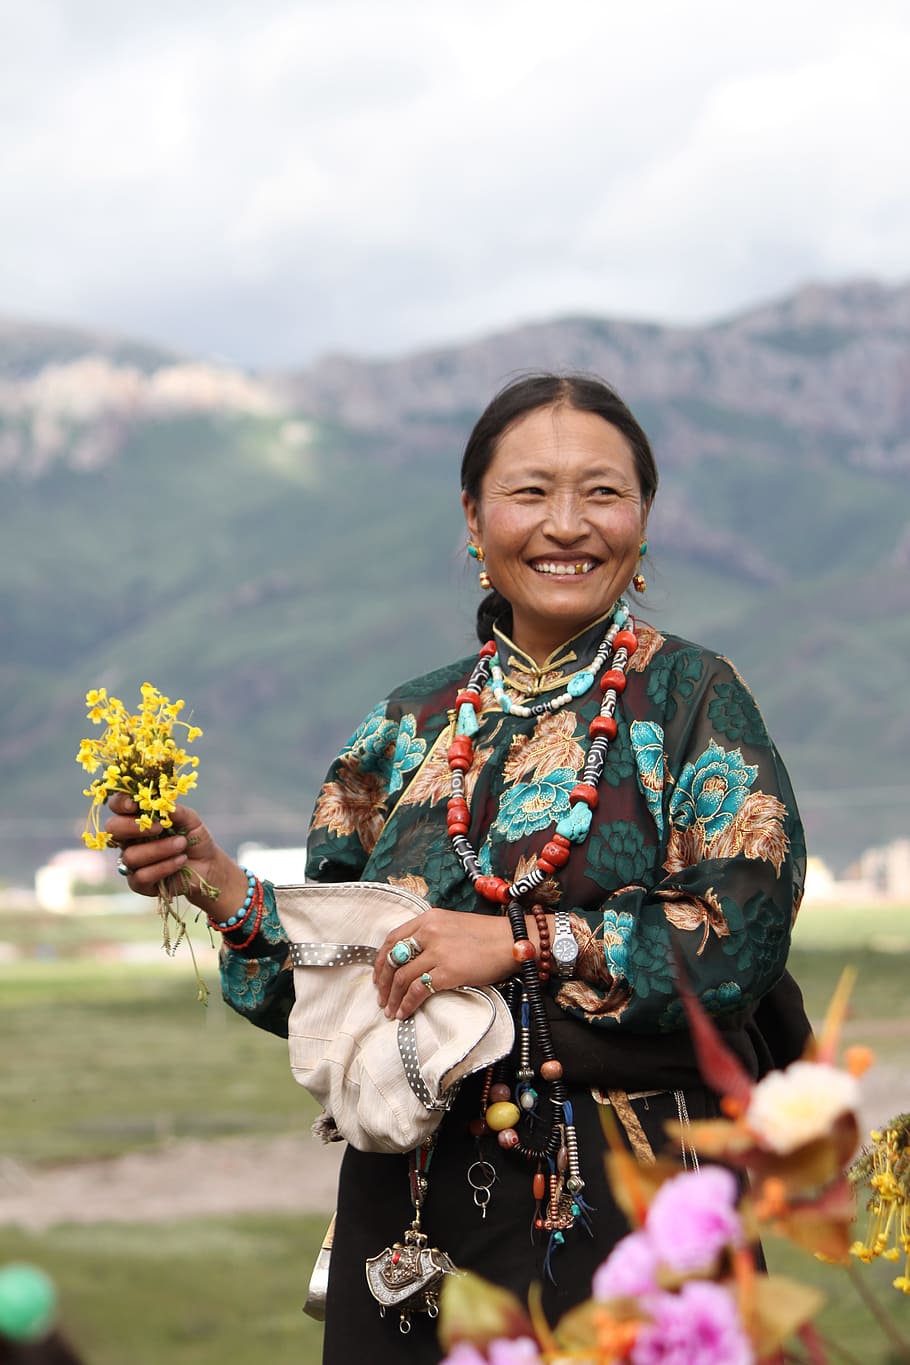 tibet etnis, Karakter, Tibet, Etnis, tangan memegang bunga, ms, hanya wanita, dewasa saja, satu orang, gunung